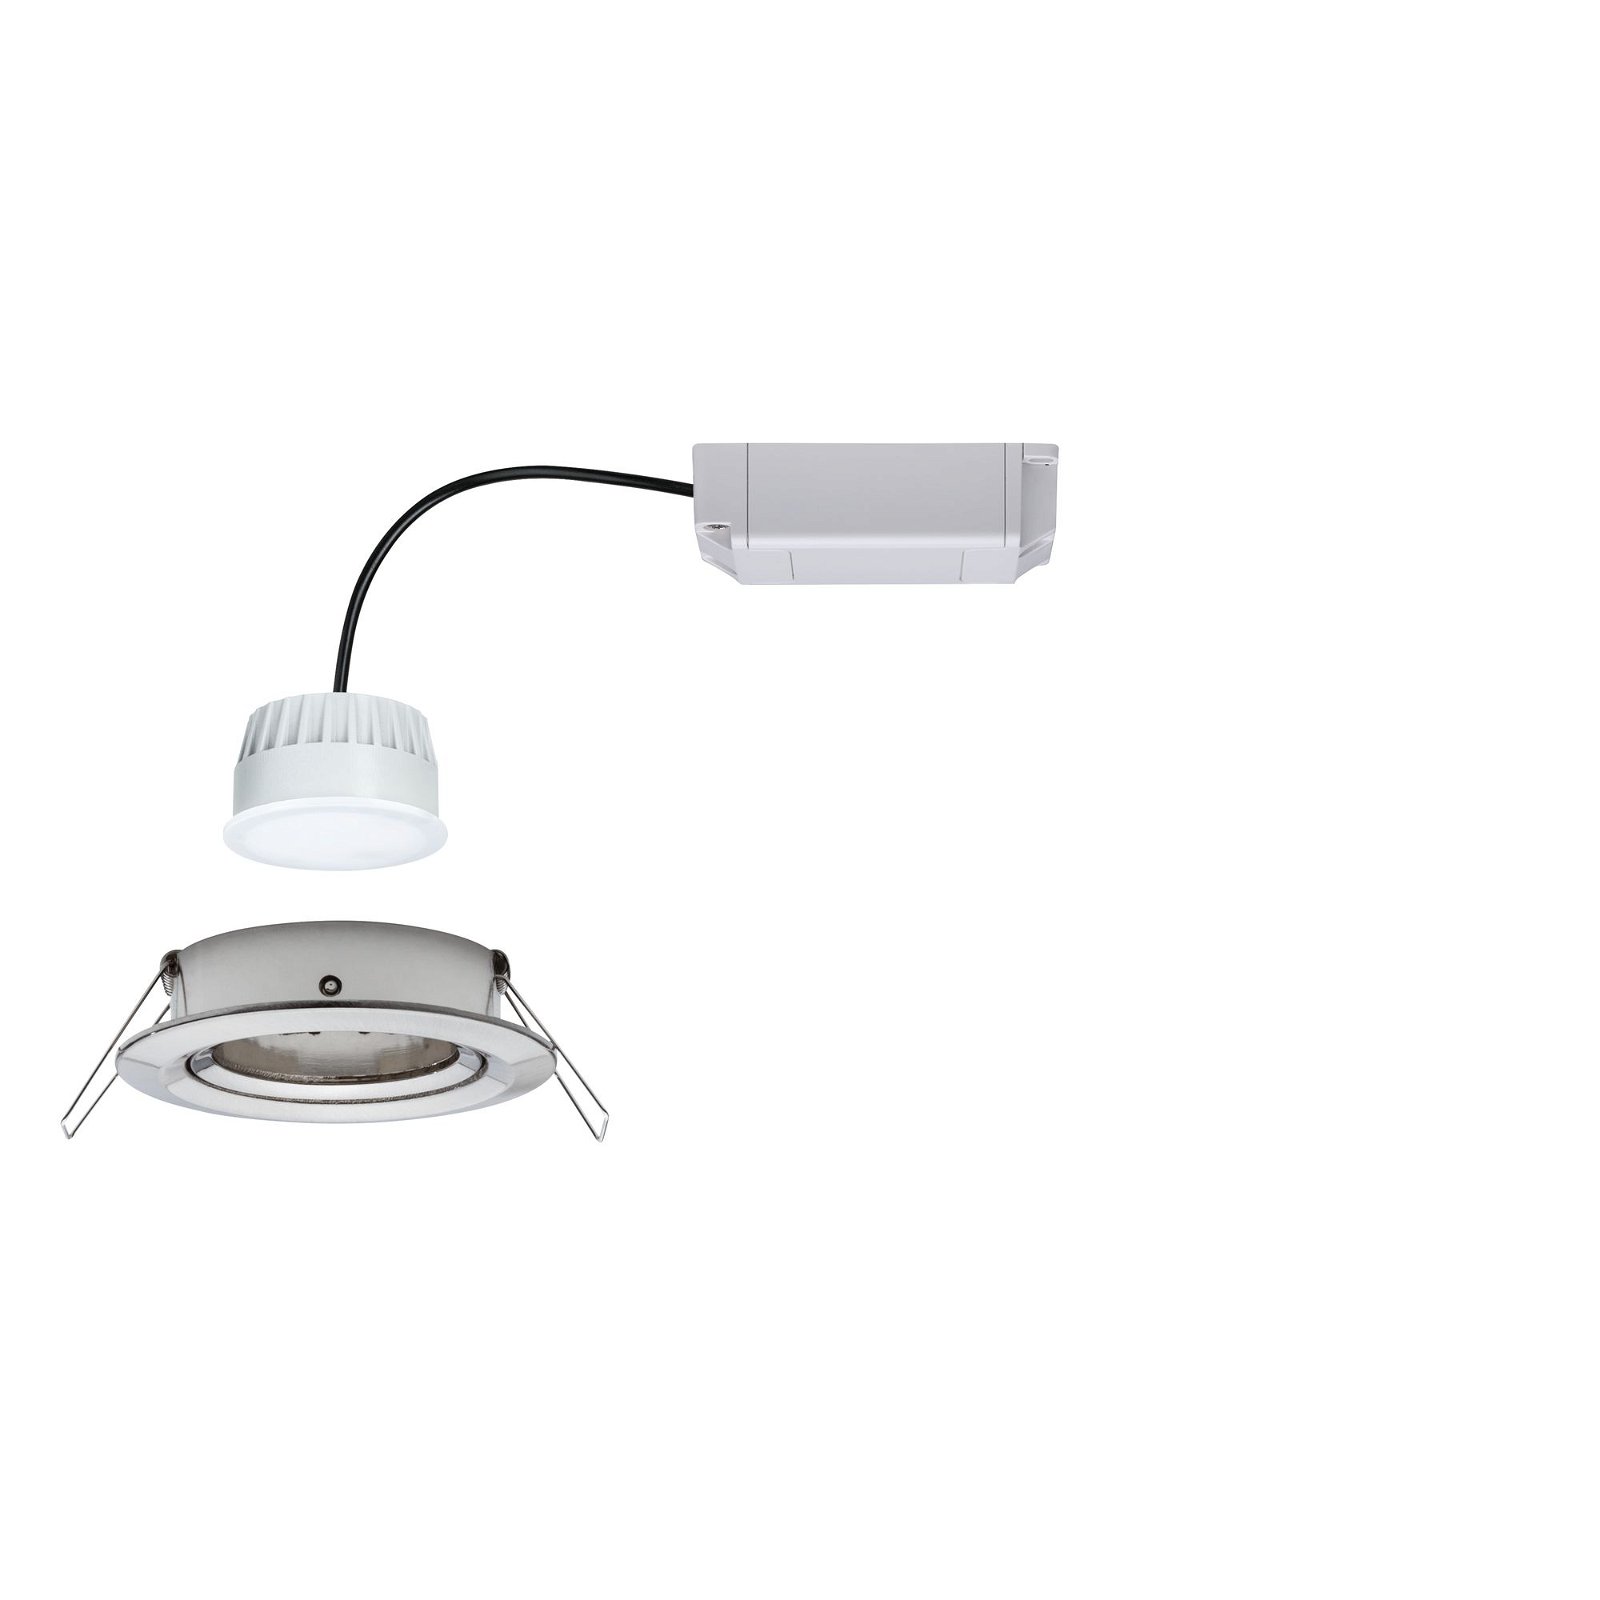 LED-inbouwlamp Smart Home Zigbee Nova Plus Coin zwenkbaar rond 84mm 50° Coin 6W 470lm 230V dimbaar Tunable White Staal geborsteld